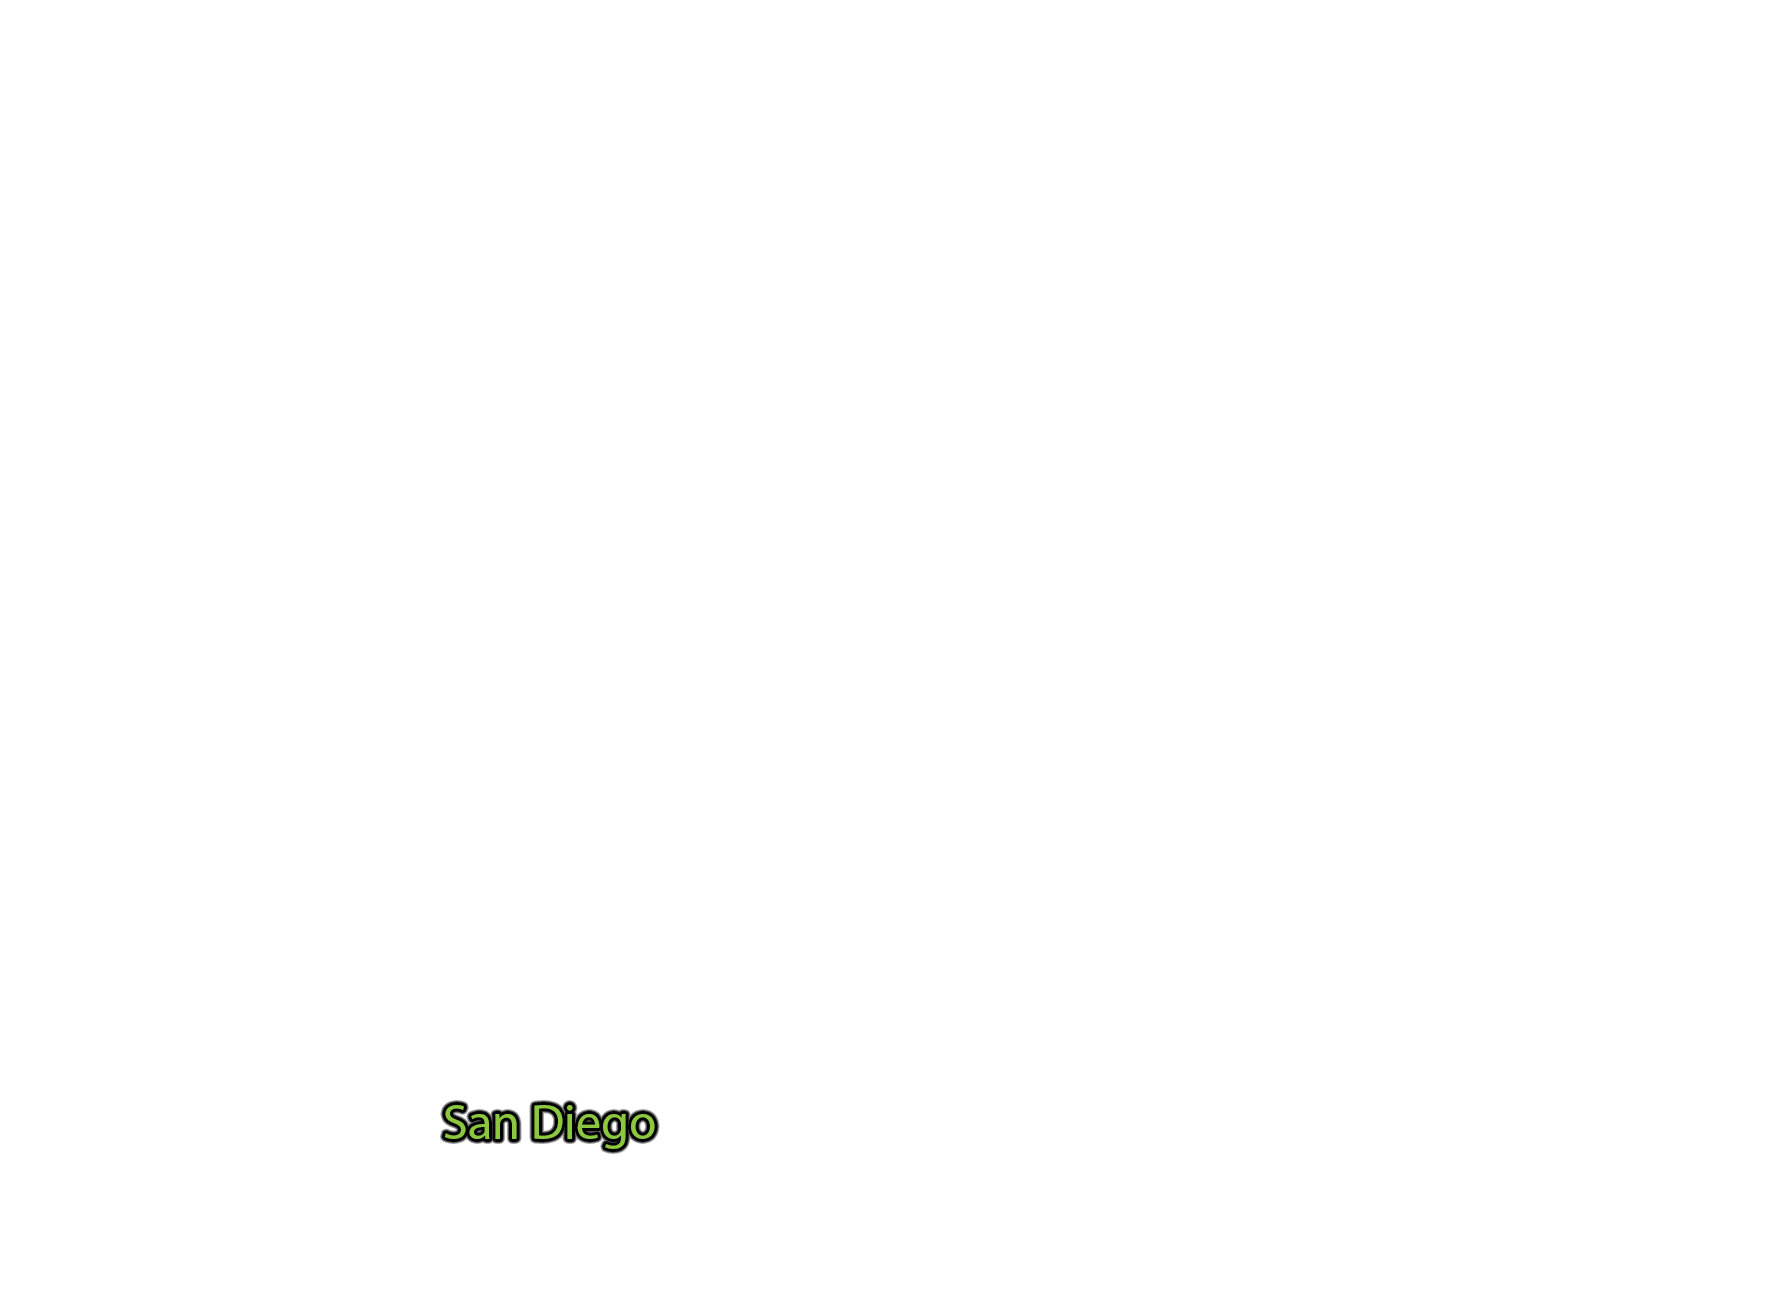 San-Diego label with glow